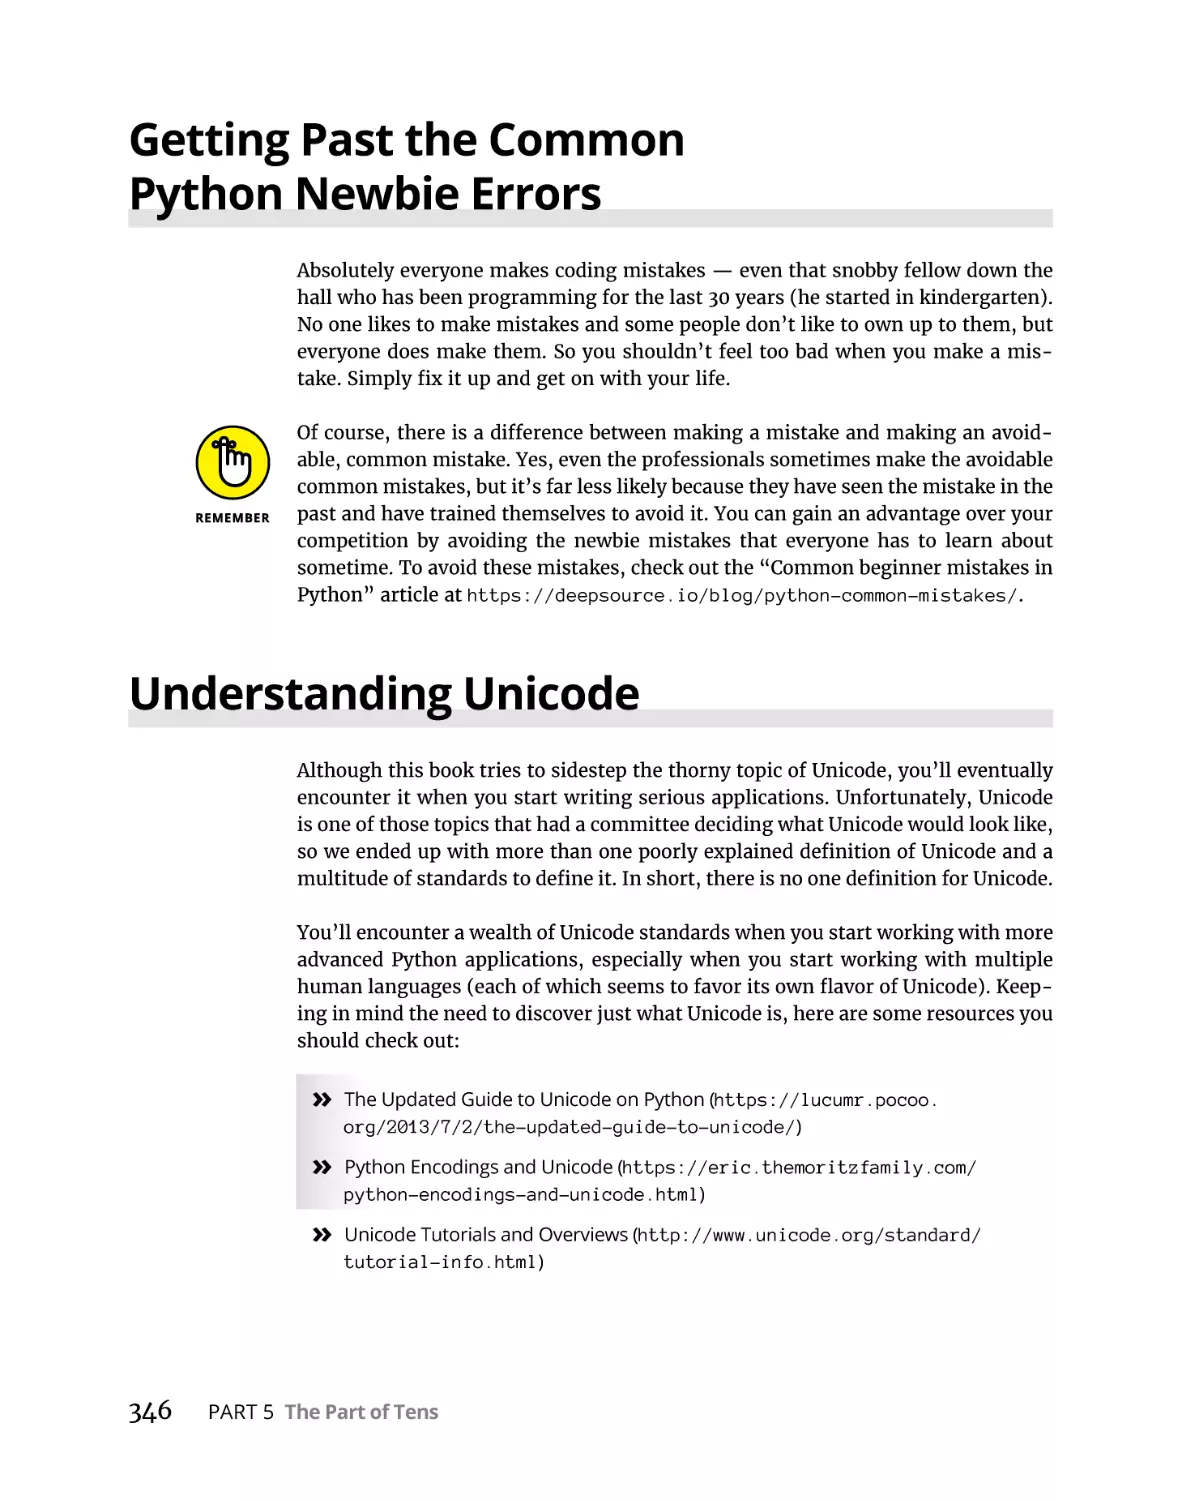 Getting Past the Common Python Newbie Errors
Understanding Unicode